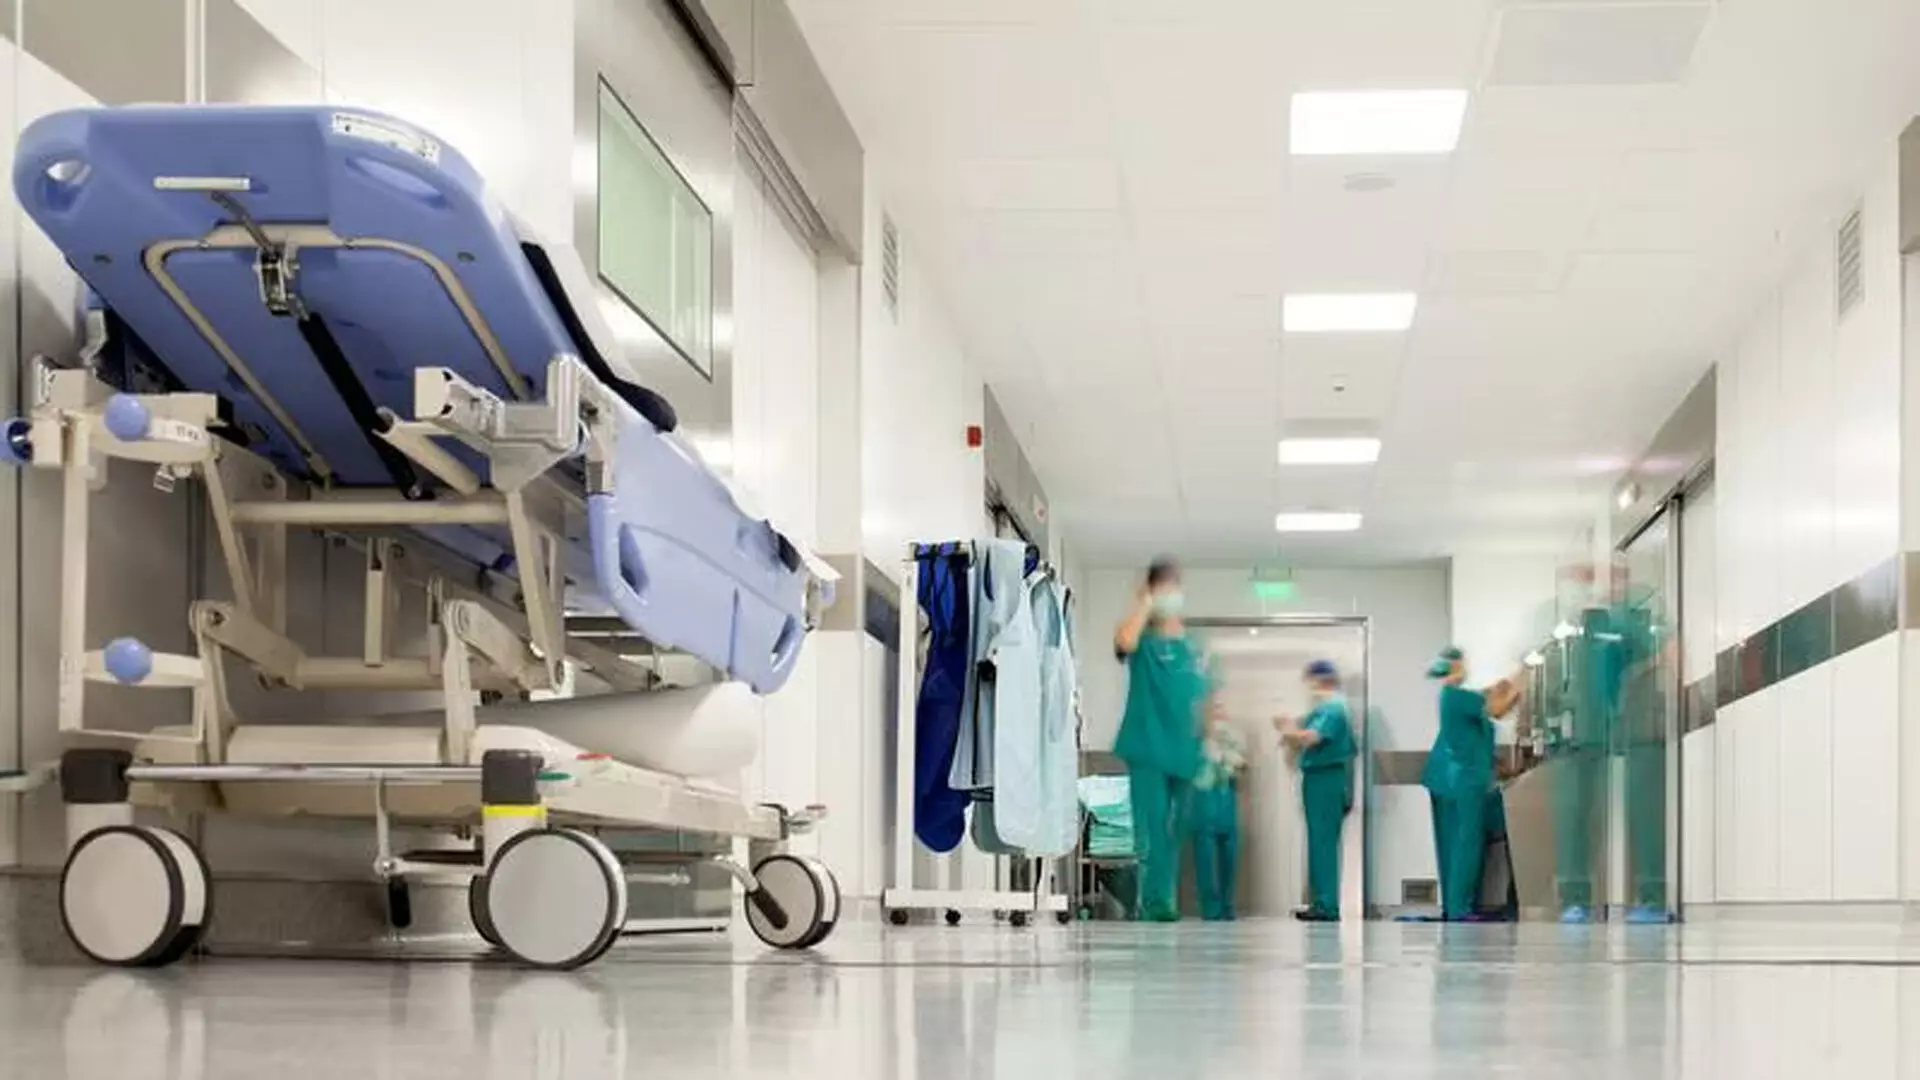 हॉस्टल में फ़ूड पॉइज़न का मामला, 76 छात्र अस्पताल में भर्ती